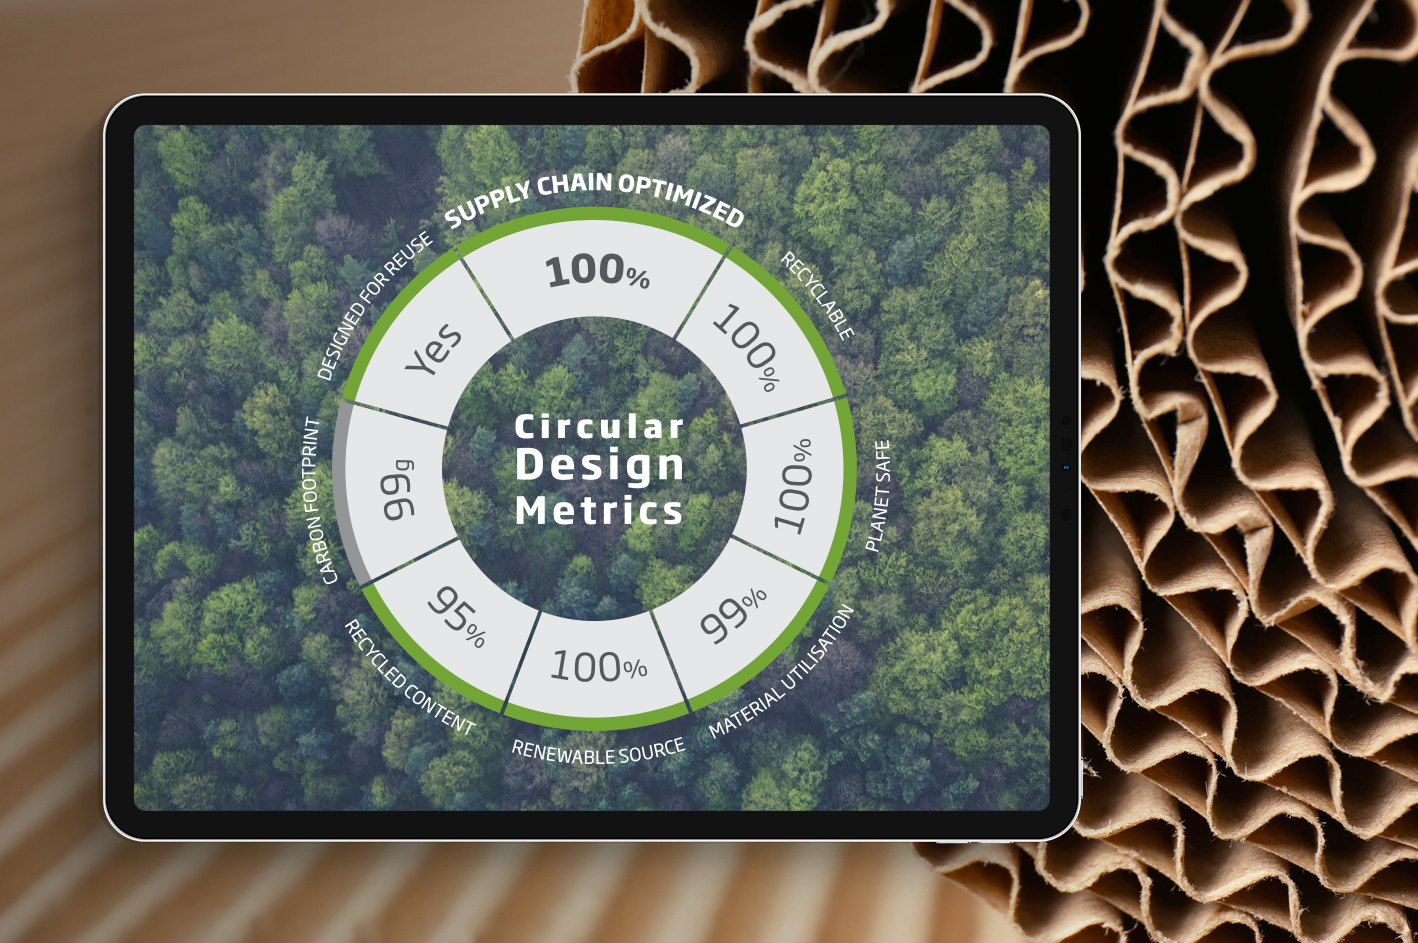 Our Circular Design Metrics